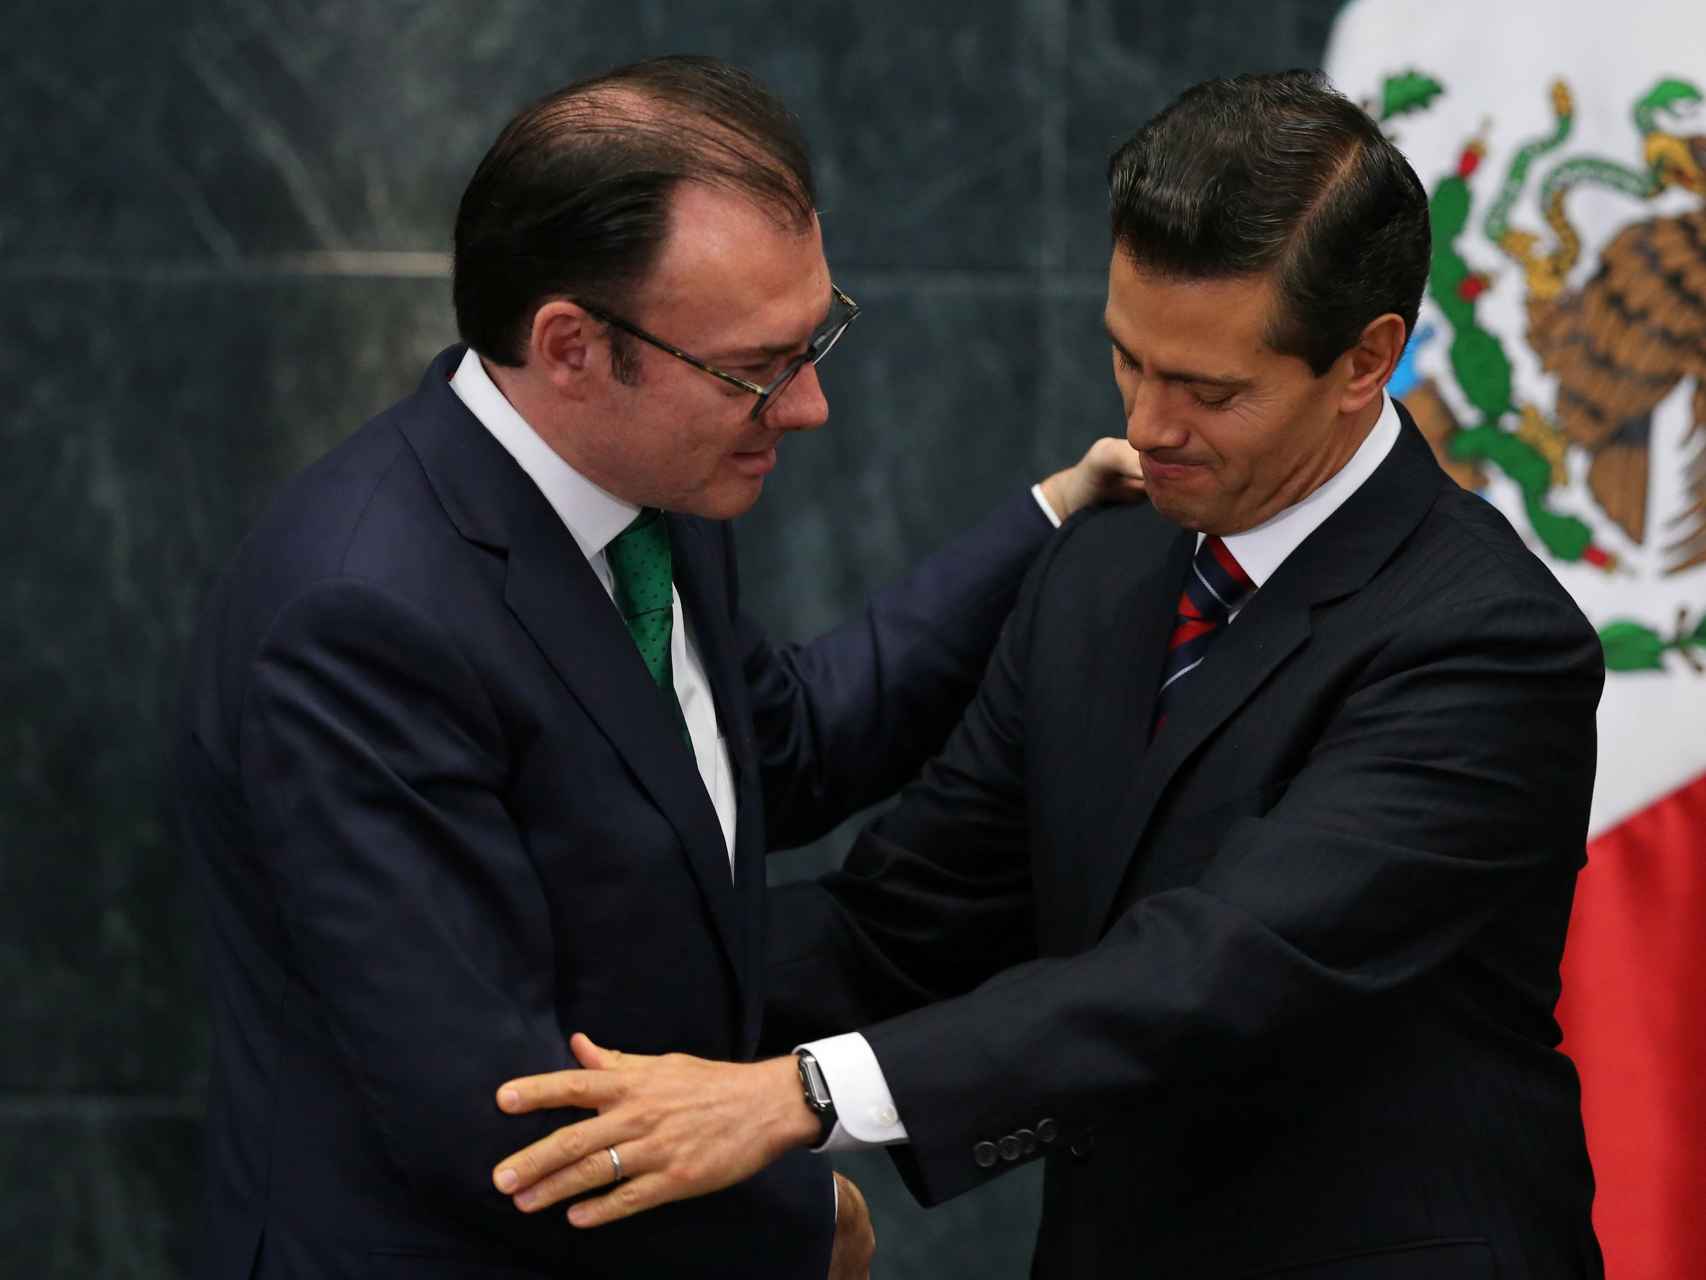 El nuevo canciller saluda a Peña Nieto